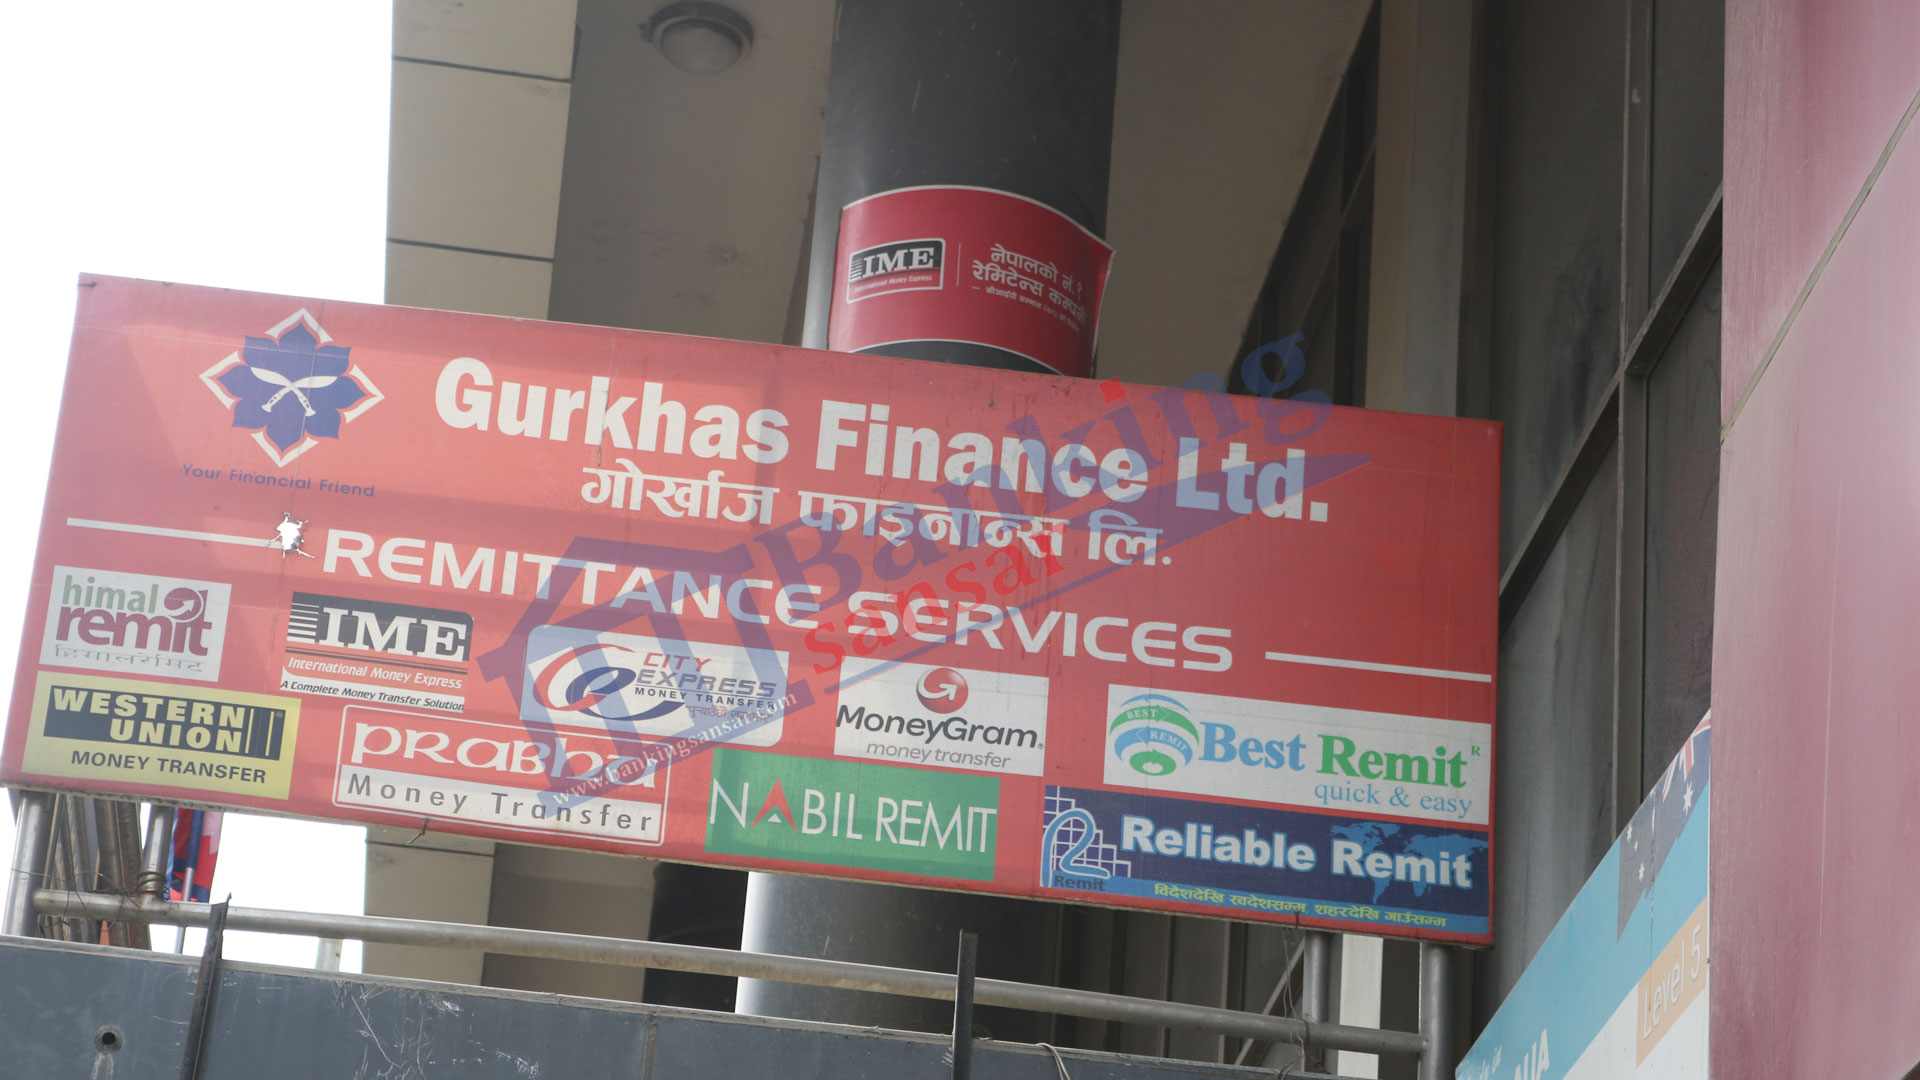 Gurkhas Finance